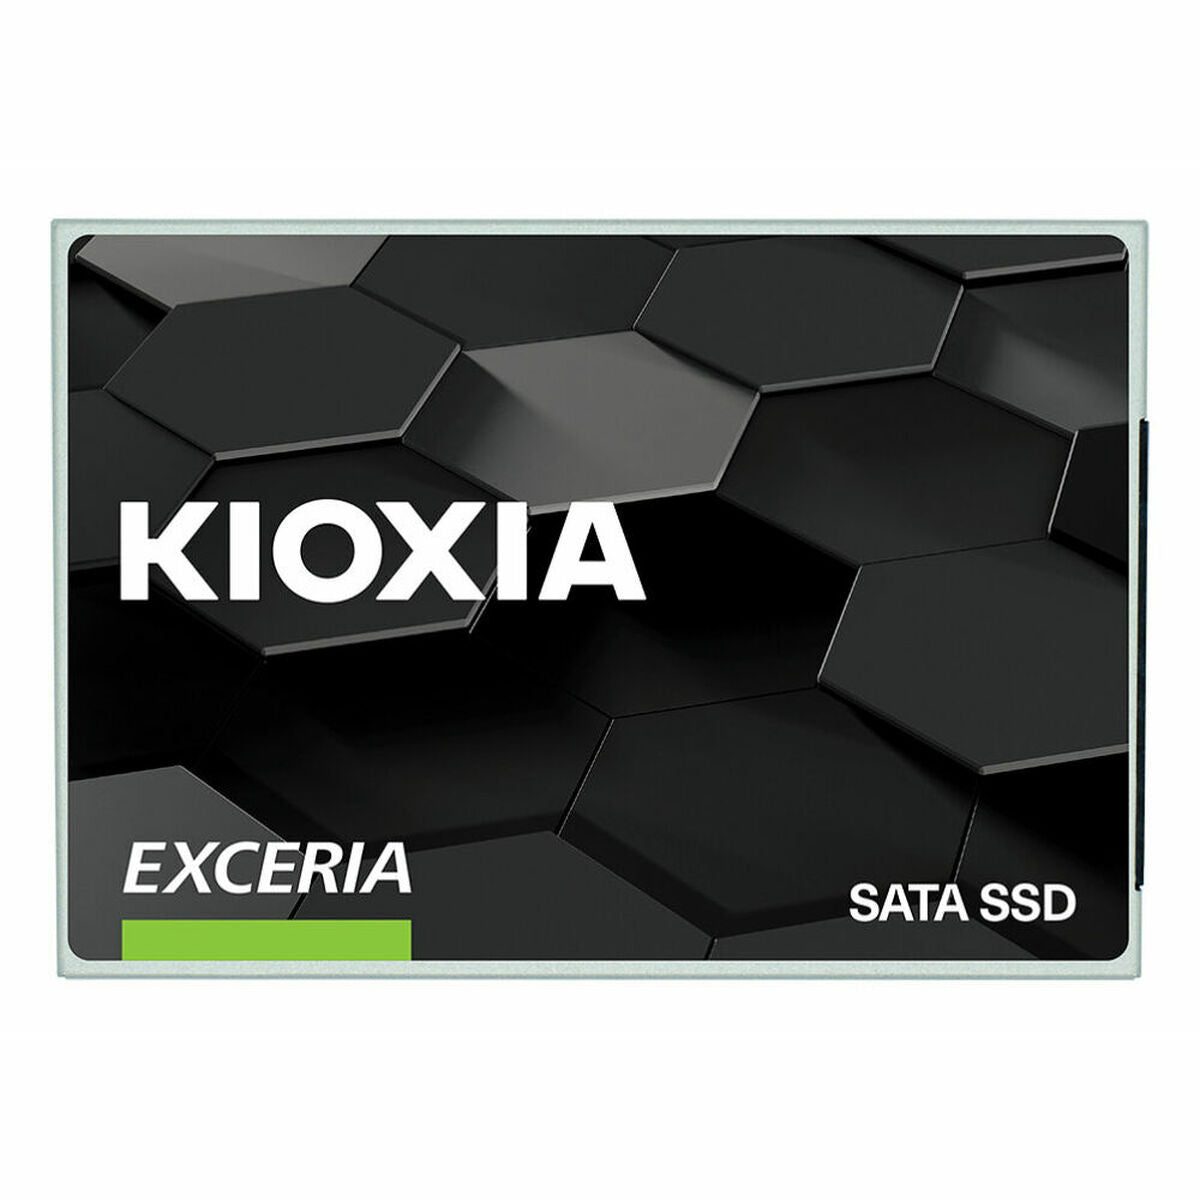 Kioxia EXCERIA Interne SSD TLC 480 GB SSD 480 GB Festplatte